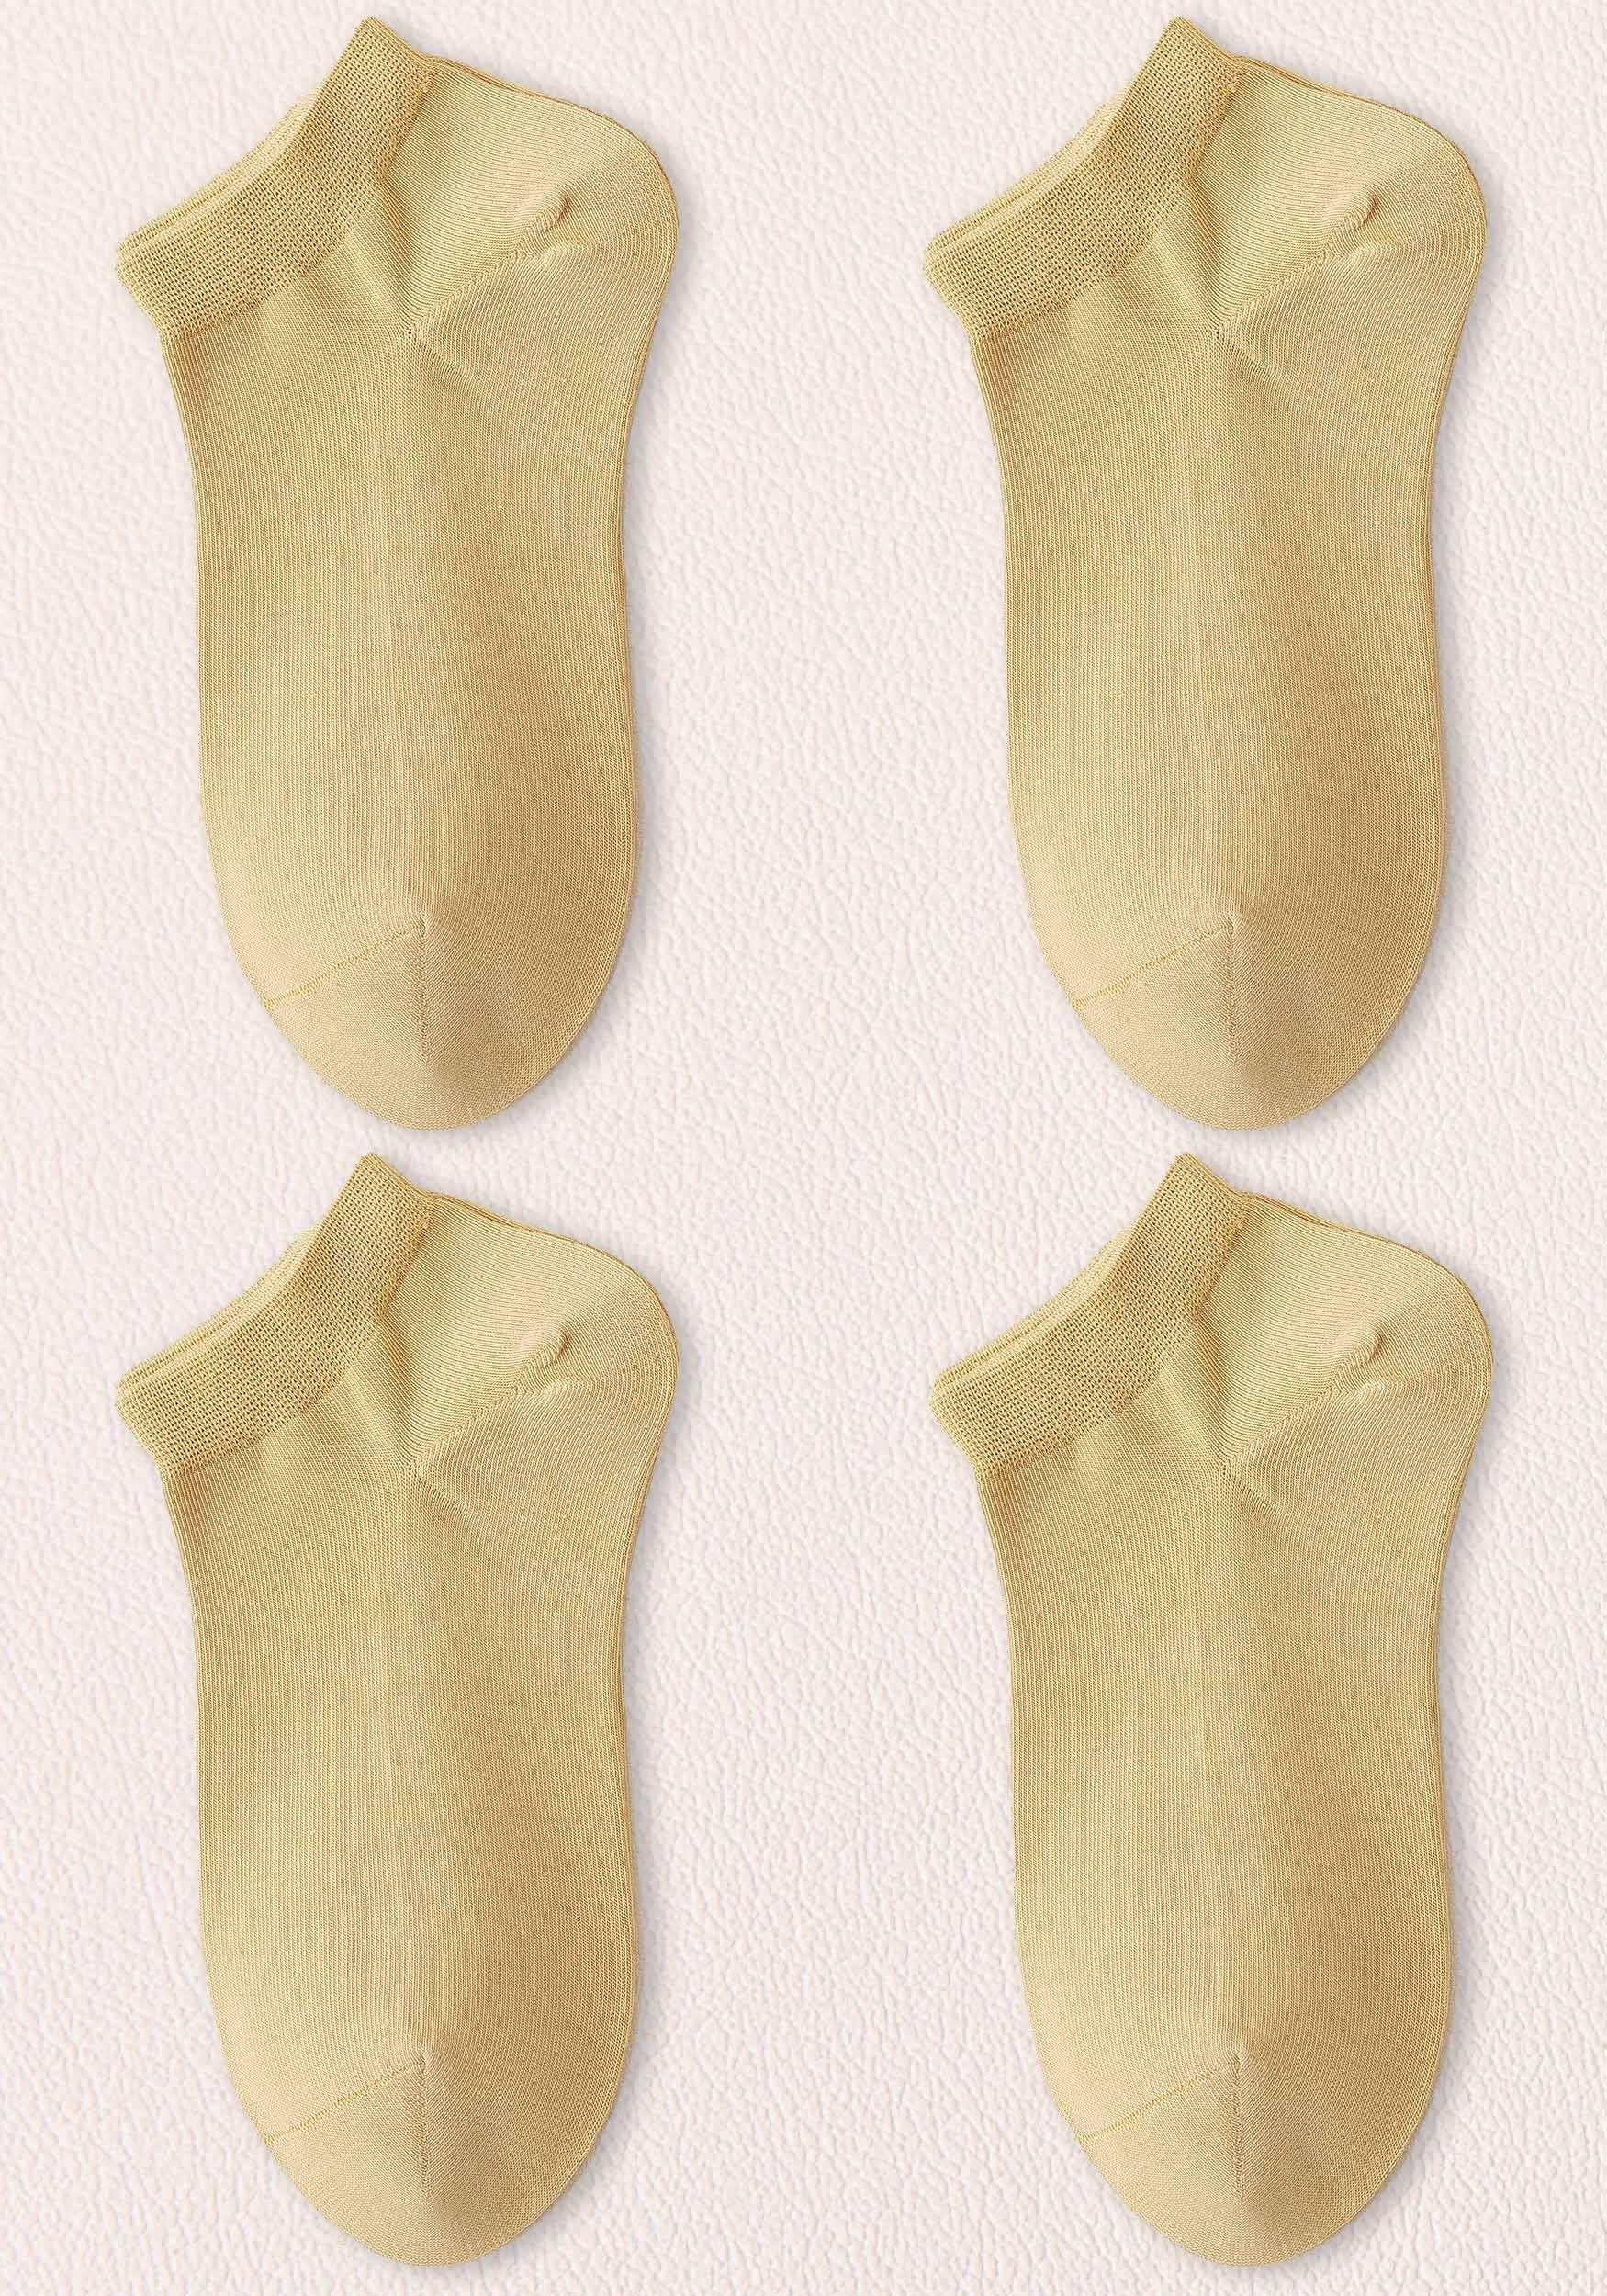 kein Damen Invisible haltbar, bequem atmungsaktiv,lange Freizeitsocken Gelb (4-Paar) Verrutschen Socken– Sneakersocken MAGICSHE warm, Socken